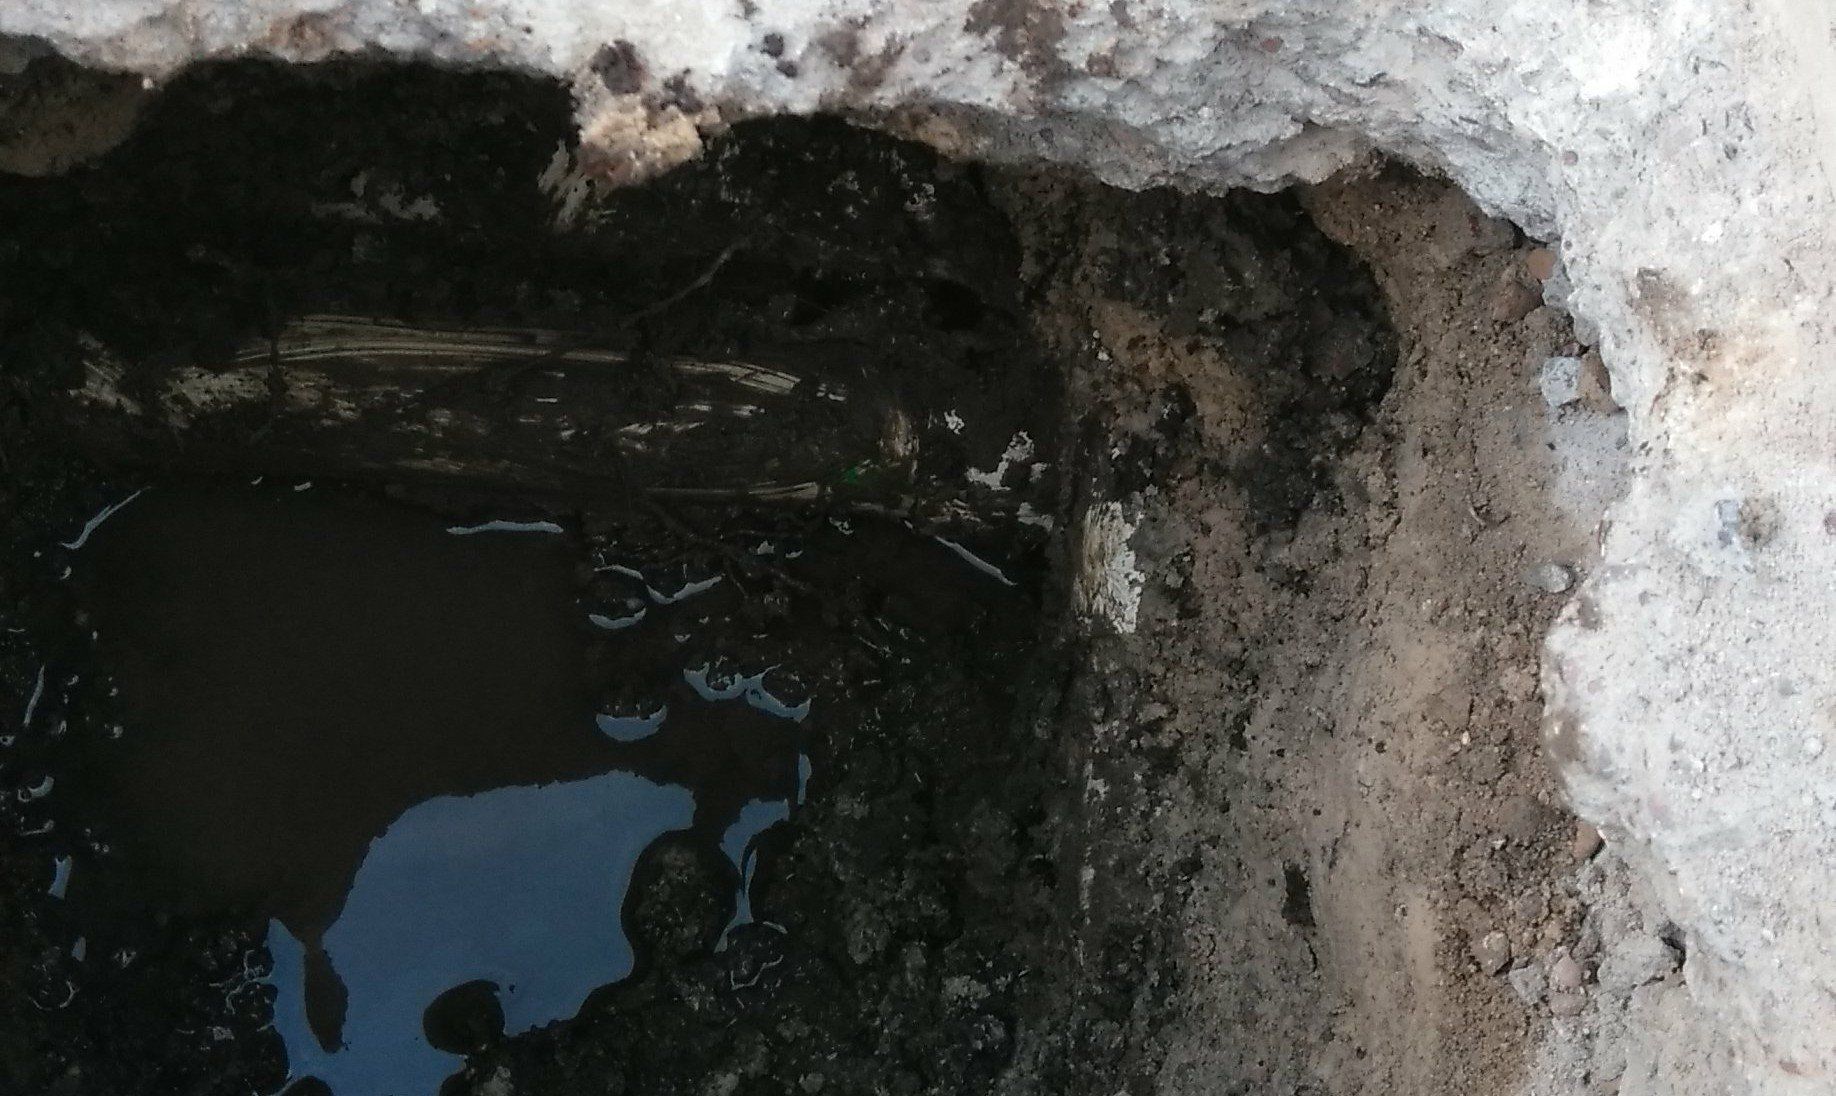 pool plumbing leak exposed